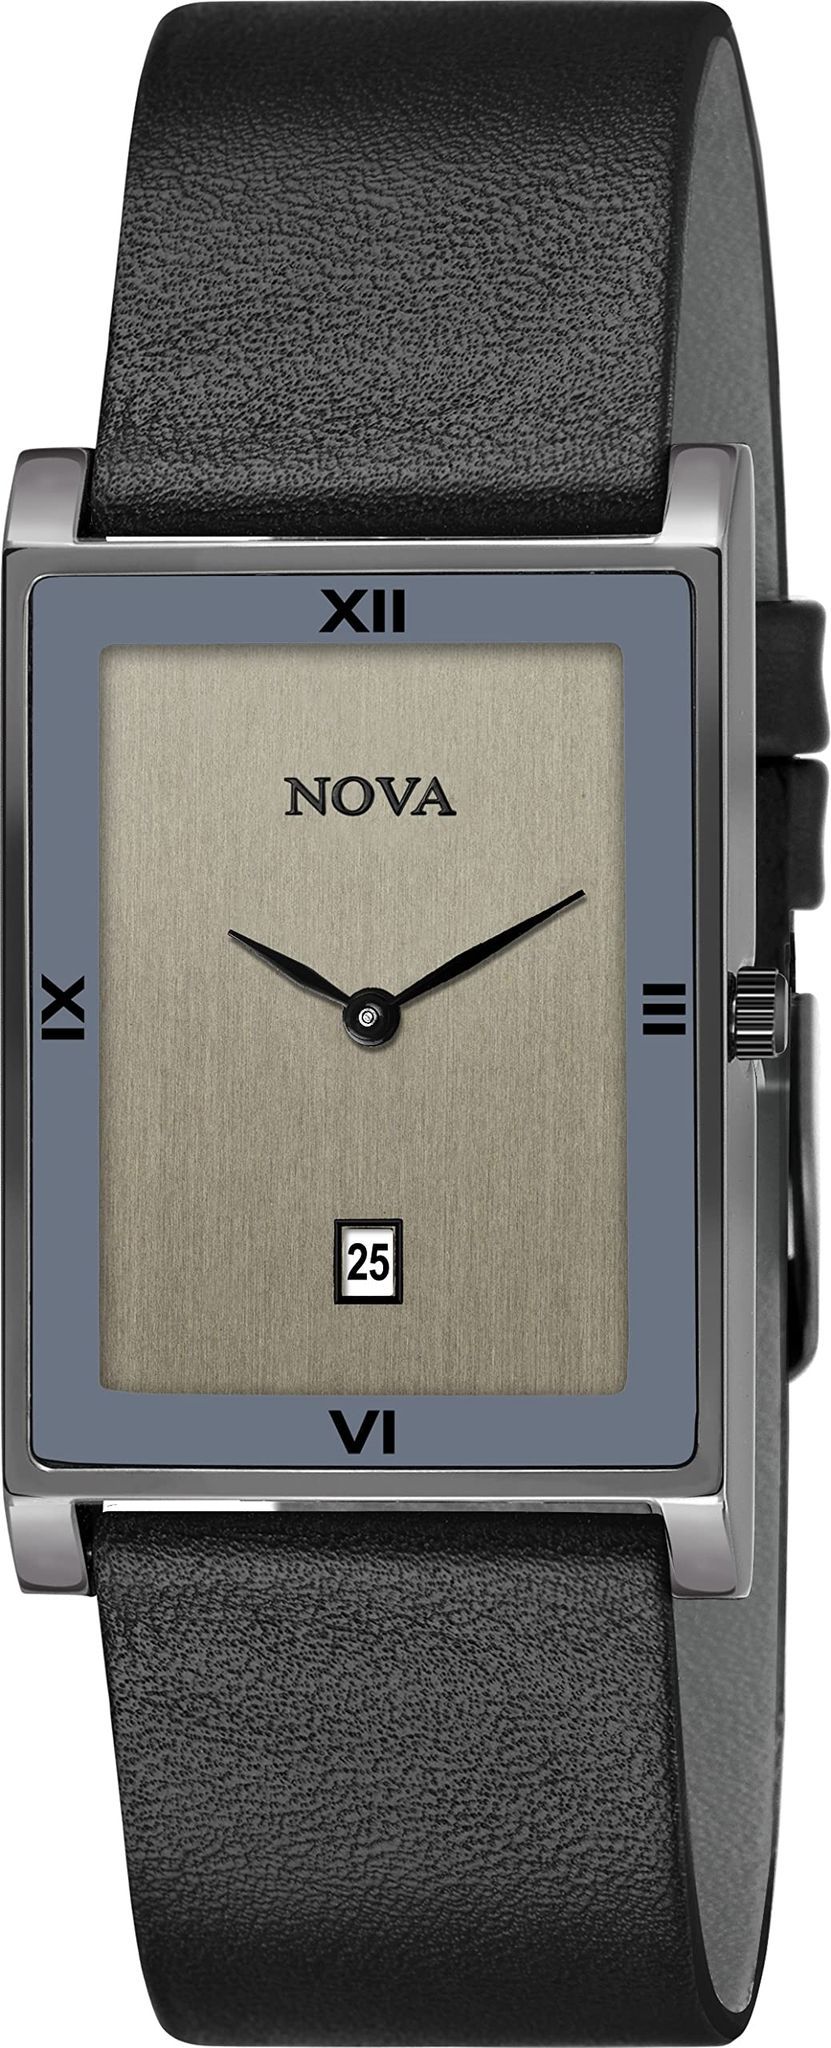 Nova – The Wood Forest Inc